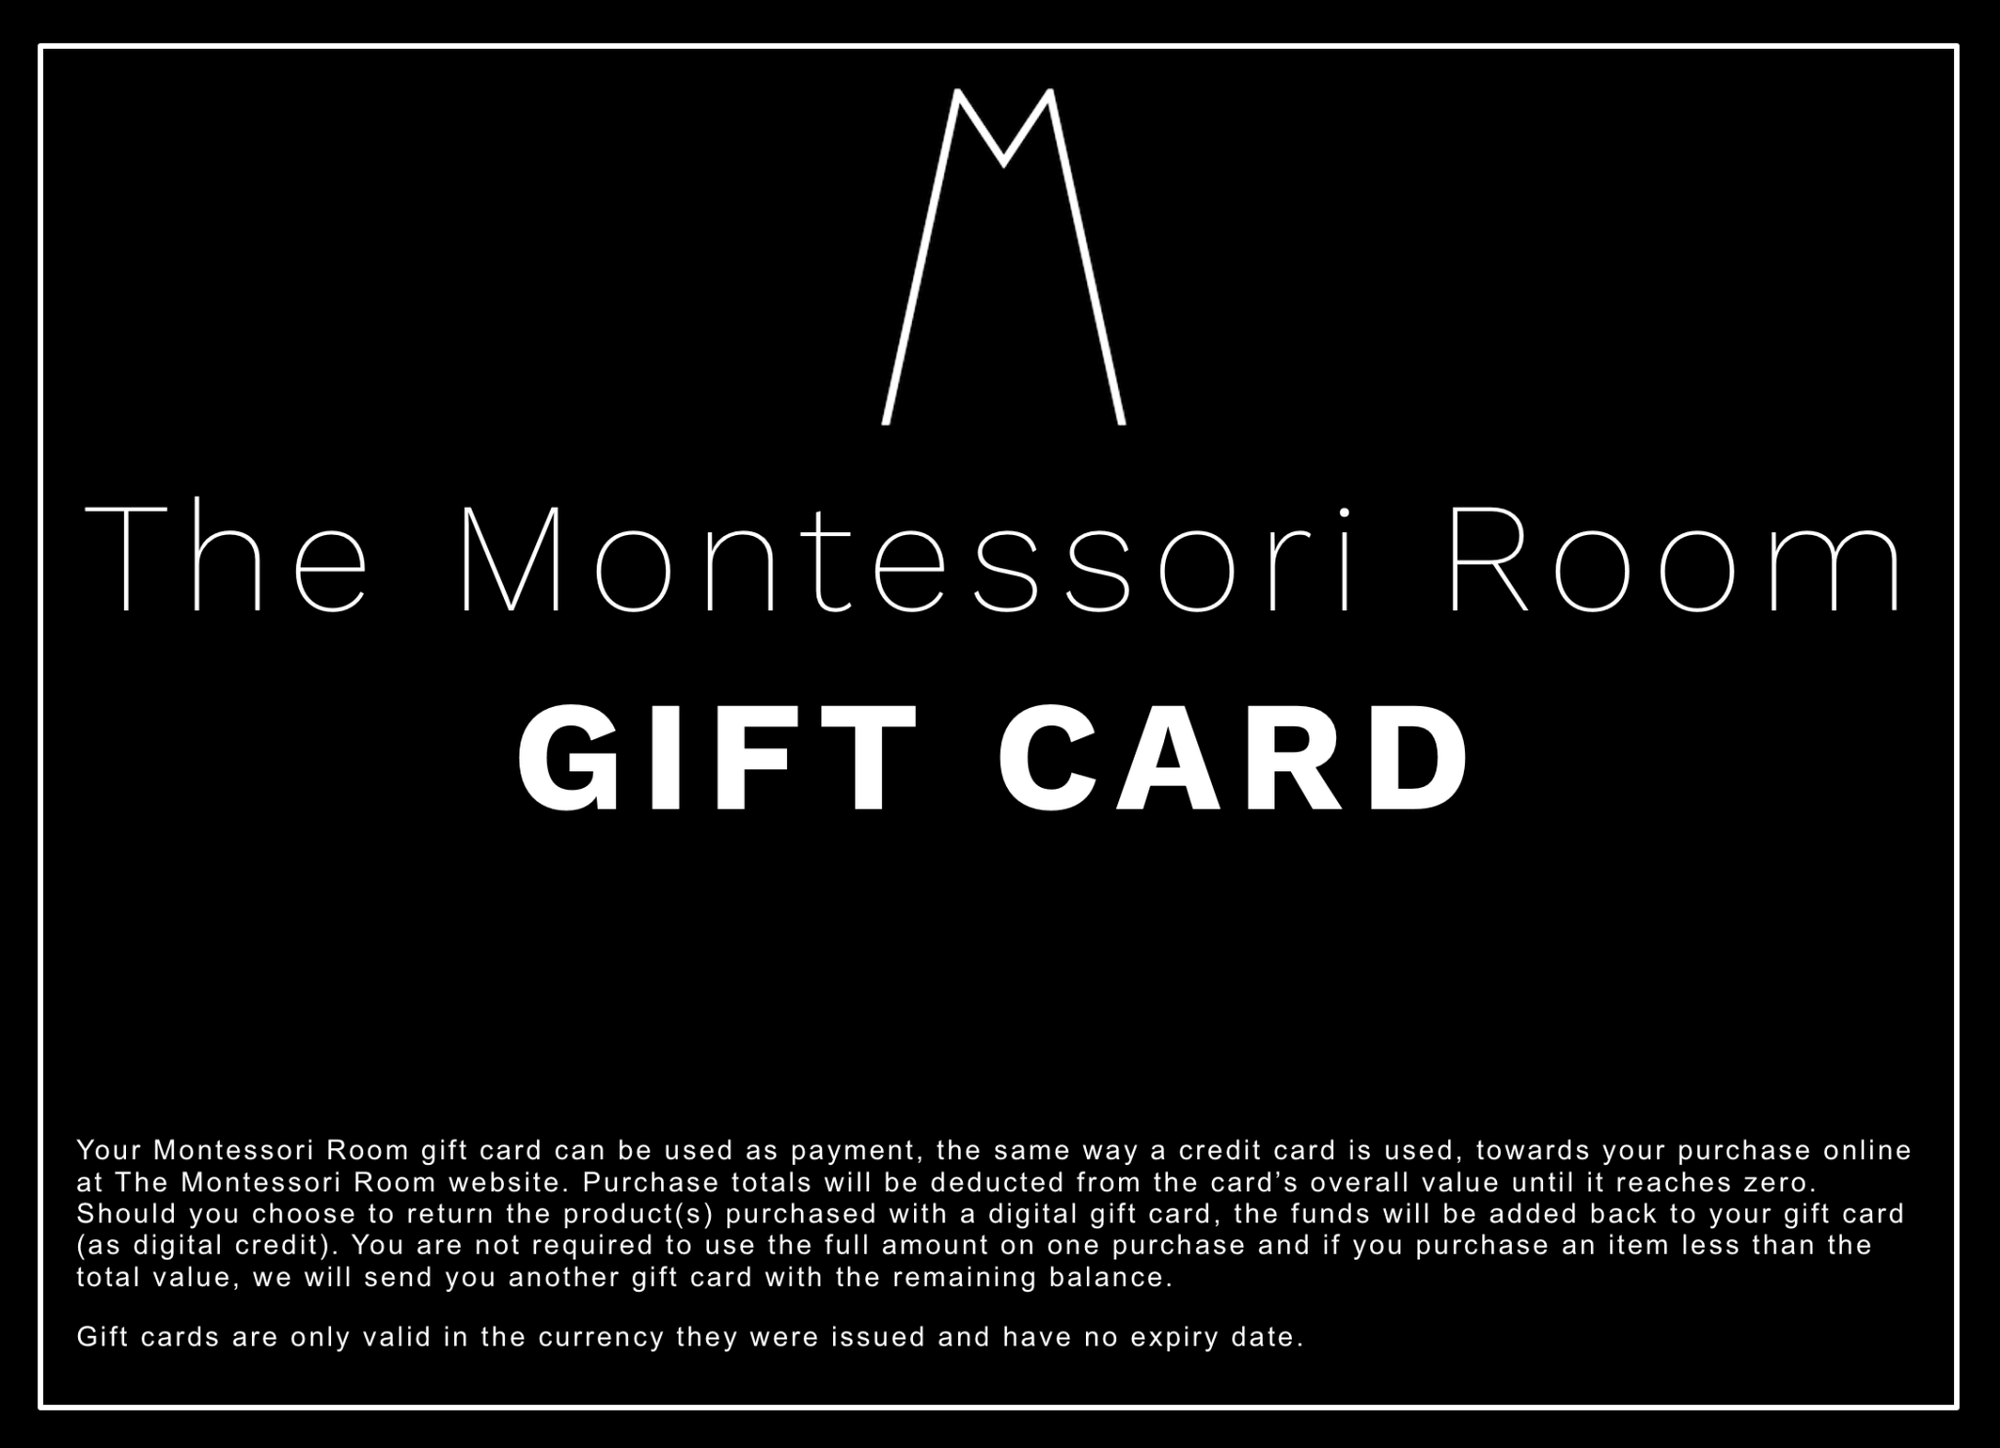 The Montessori Room Gift Card - The Montessori Room